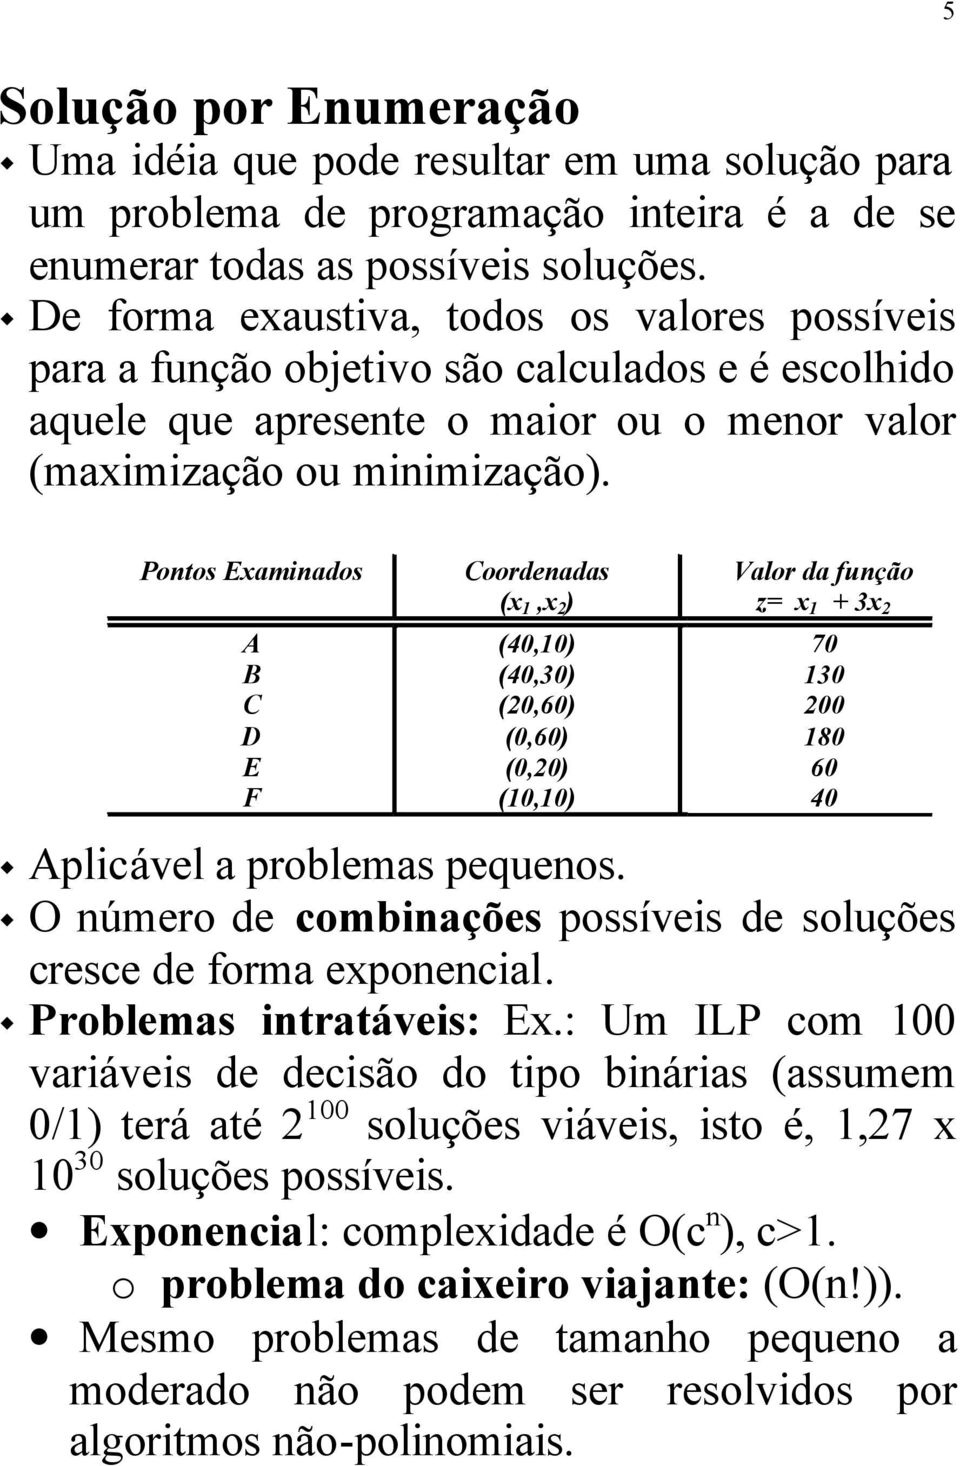 Pontos Eaminados A B C D E F Coordenadas (, ) (40,0) (40,0) (0,60) (0,60) (0,0) (0,0) Valor da função z= + 70 0 00 80 60 40 Aplicável a problemas pequenos.